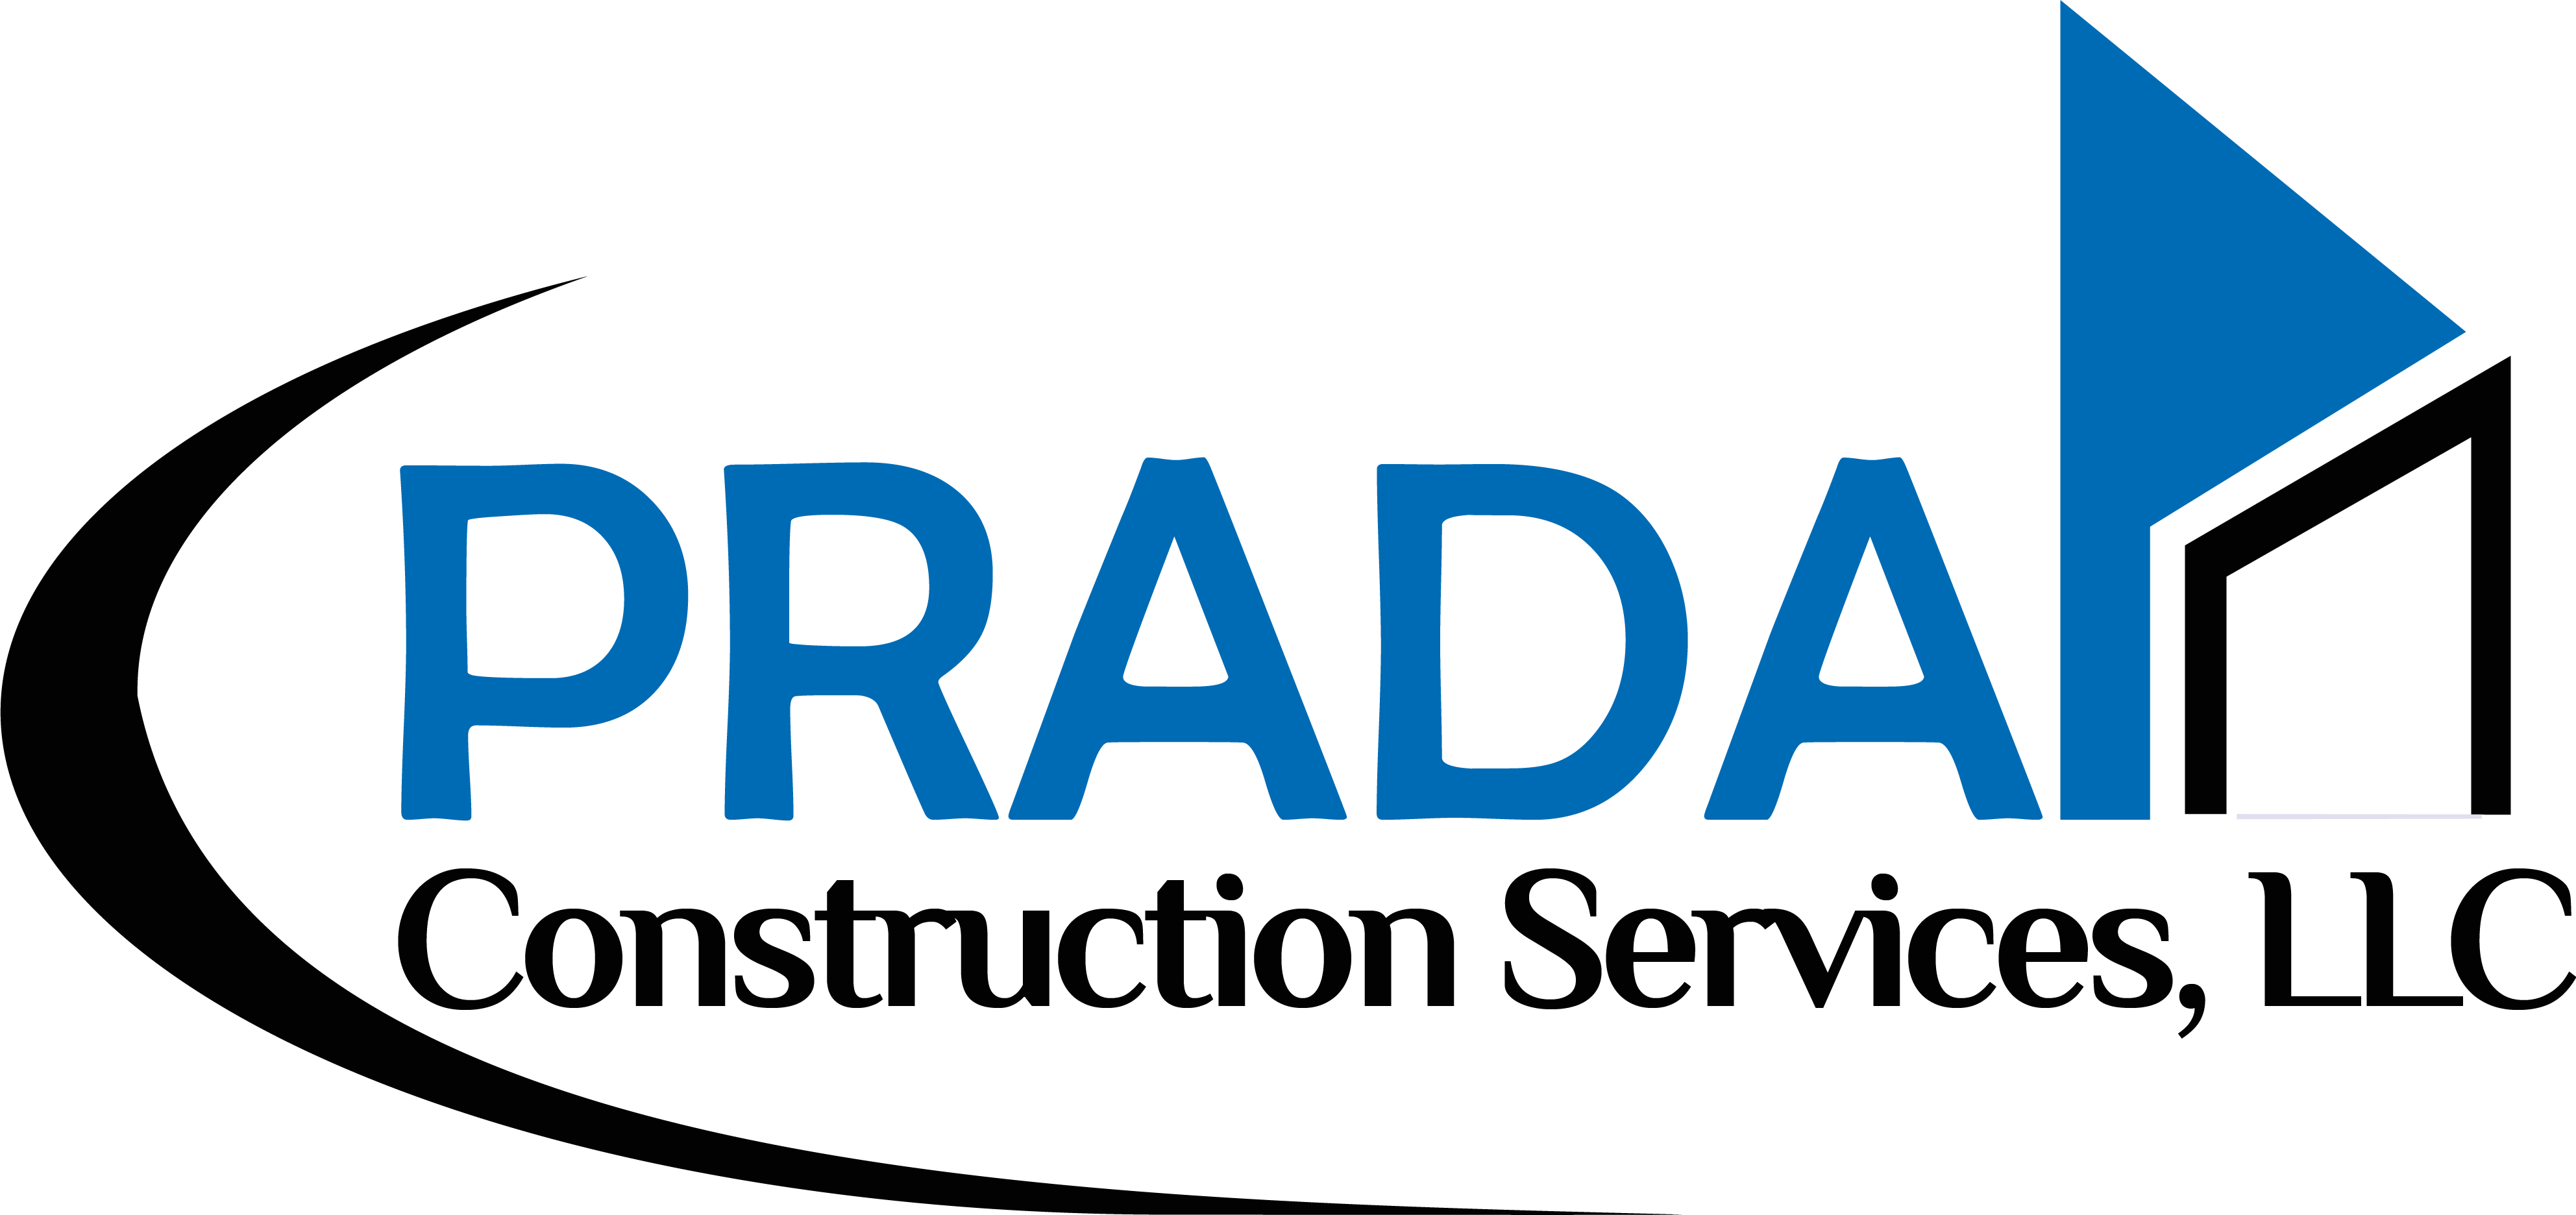 PRADA Construction Services Logo